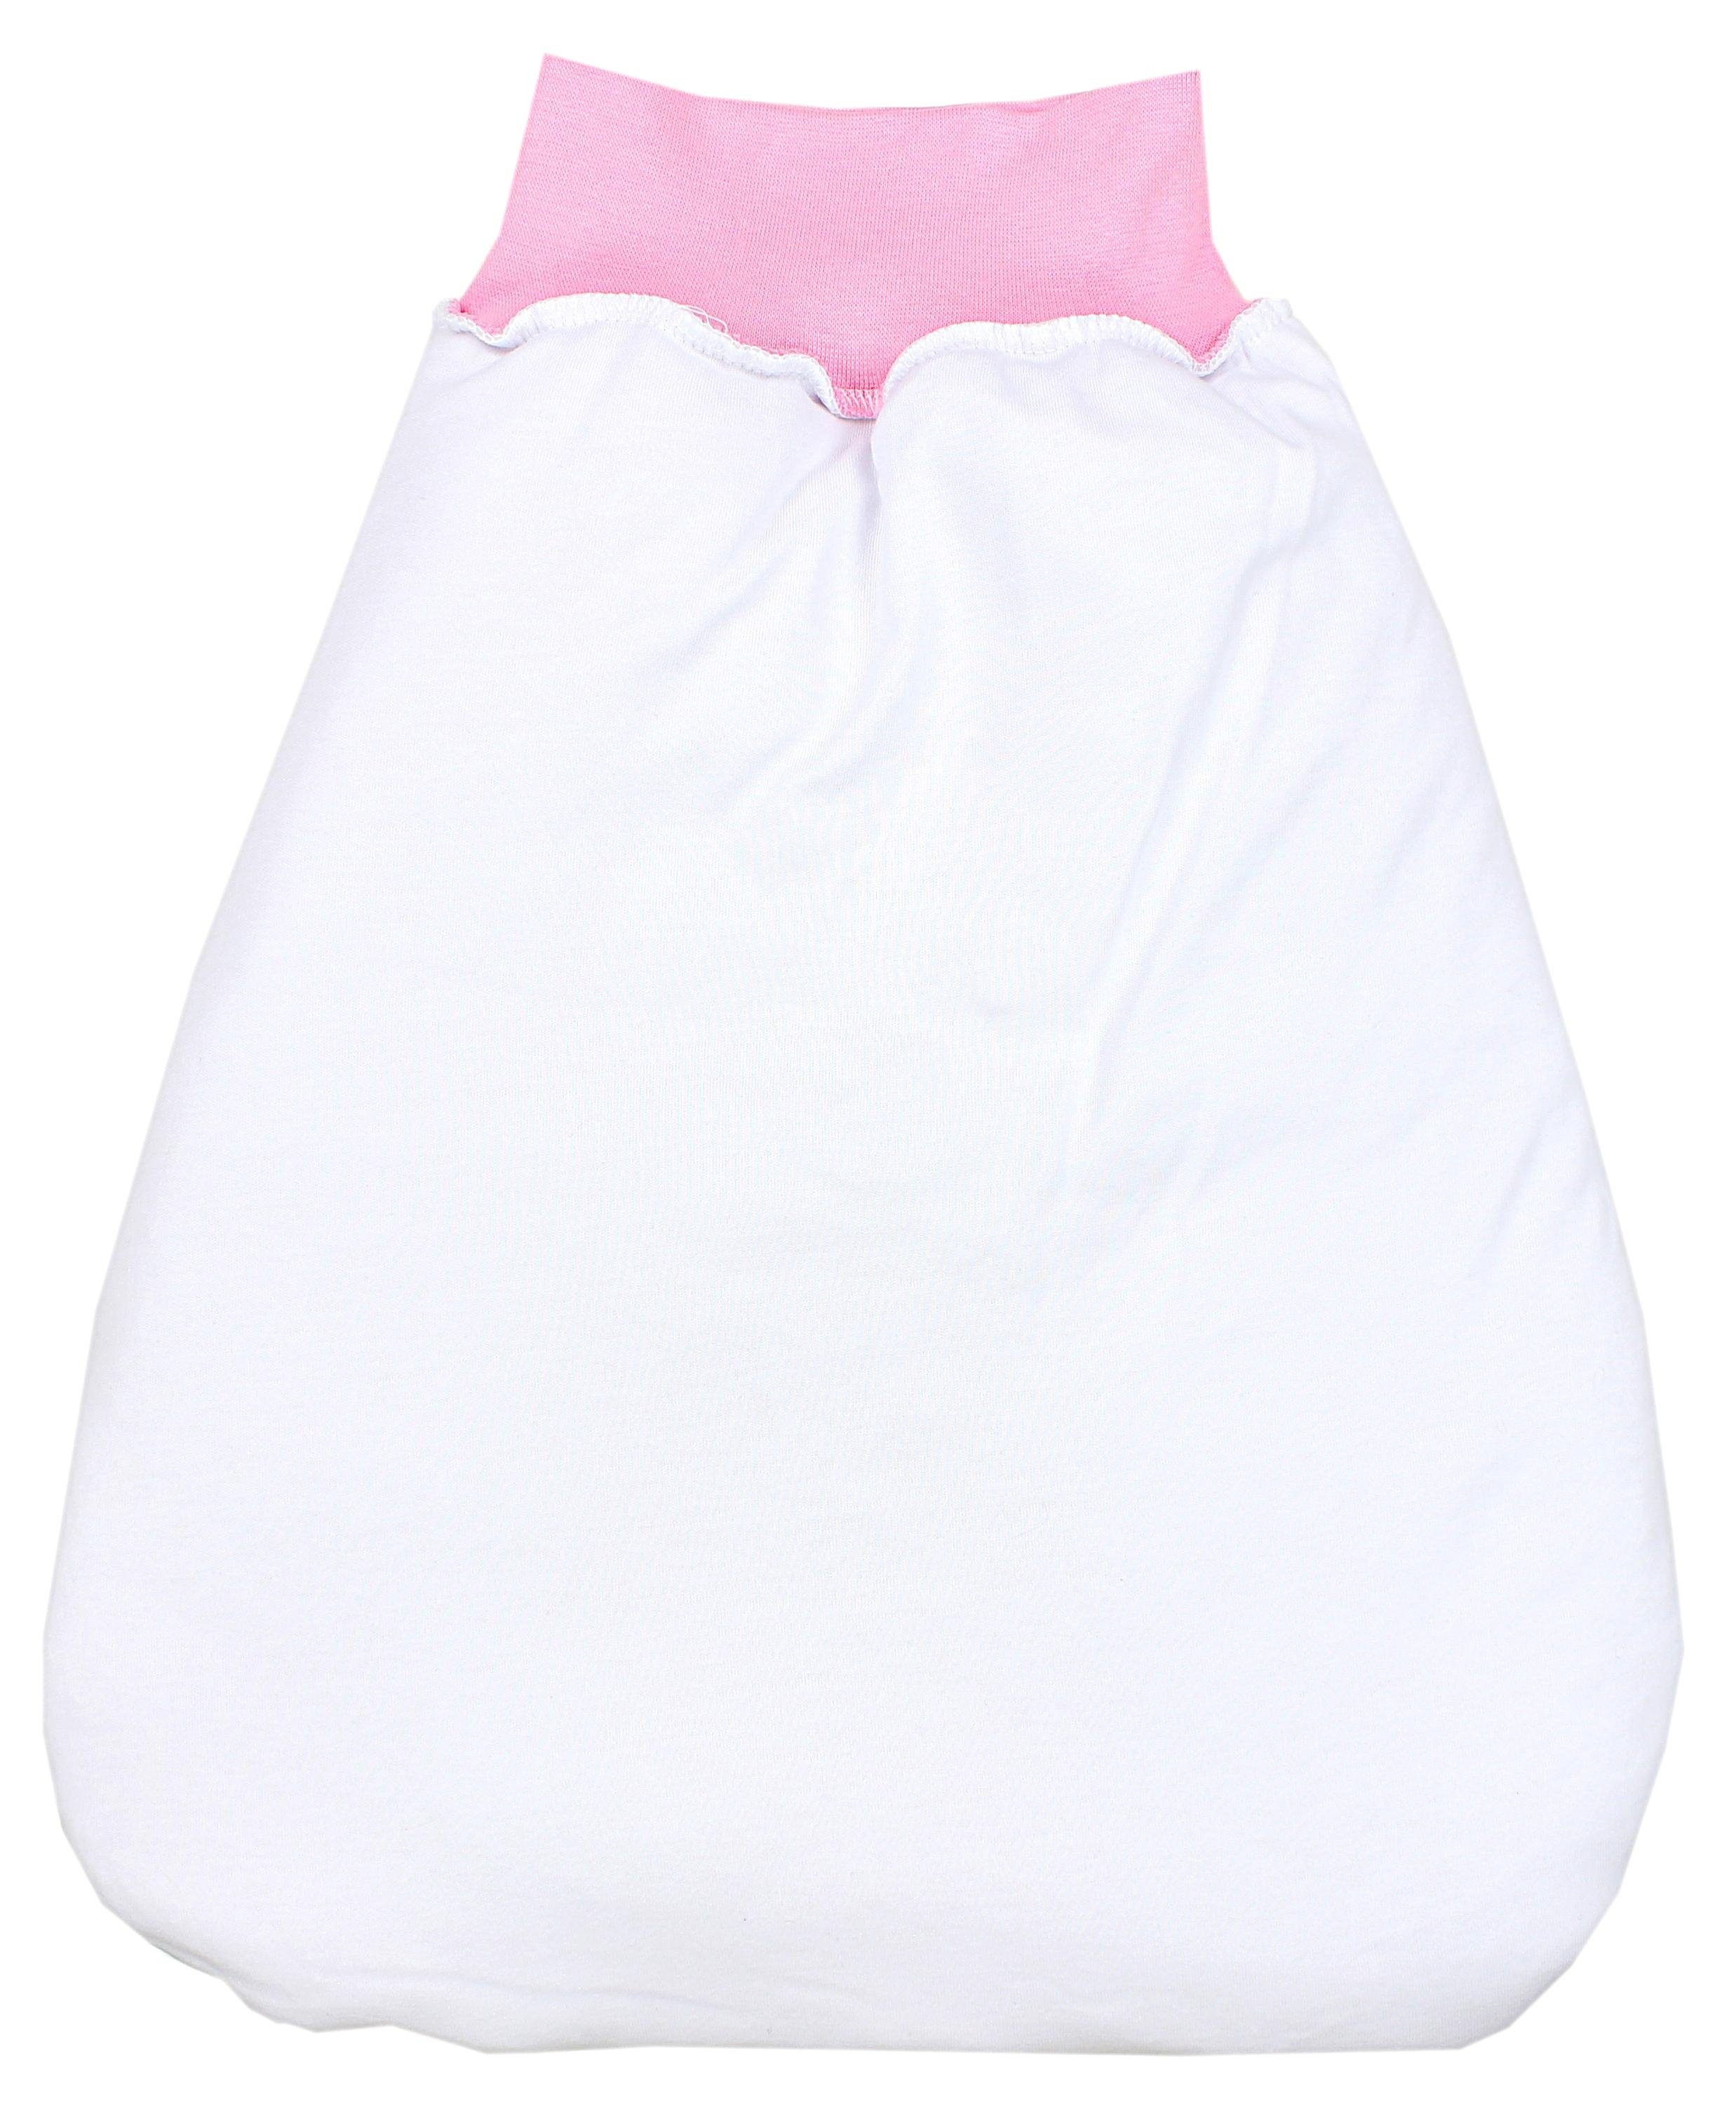 TupTam mit Bund TupTam Wattiert Babyschlafsack Unisex Strampelsack Weiß / Baby Kleine breitem Sterne Rosa